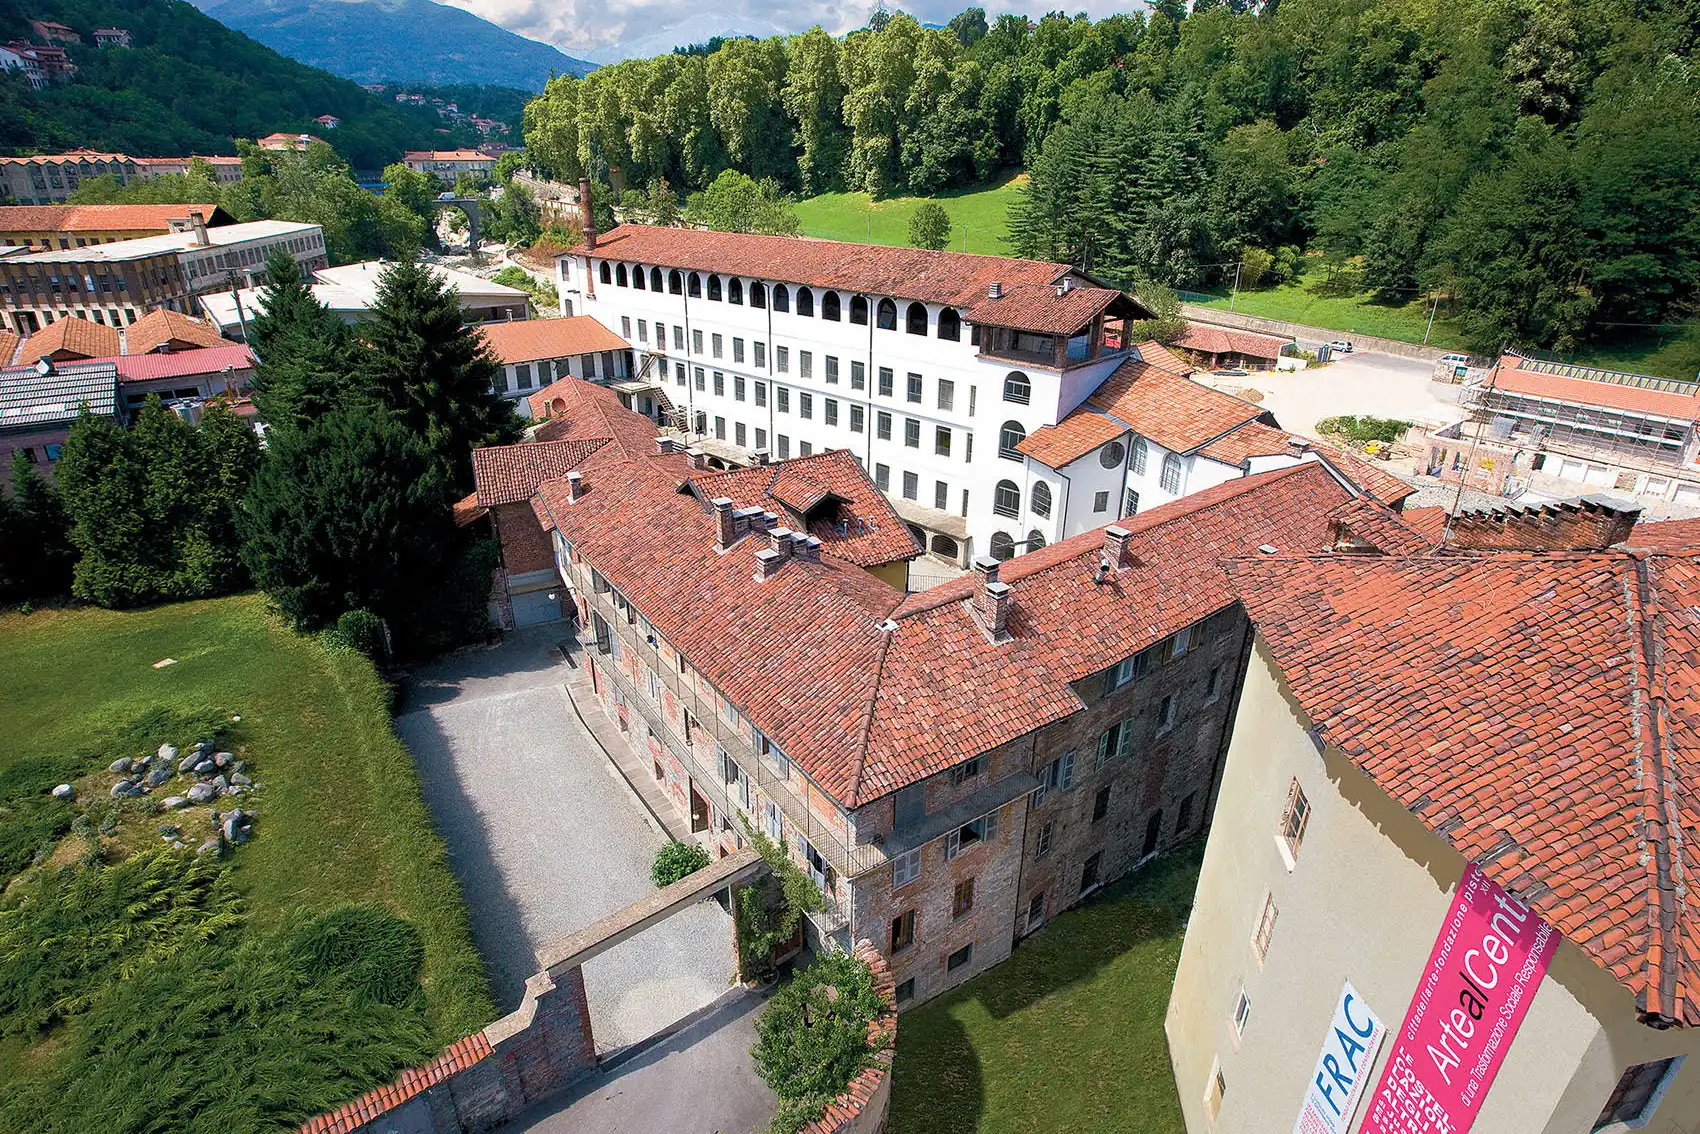 View of Cittadellarte, Fondazione Pistoletto